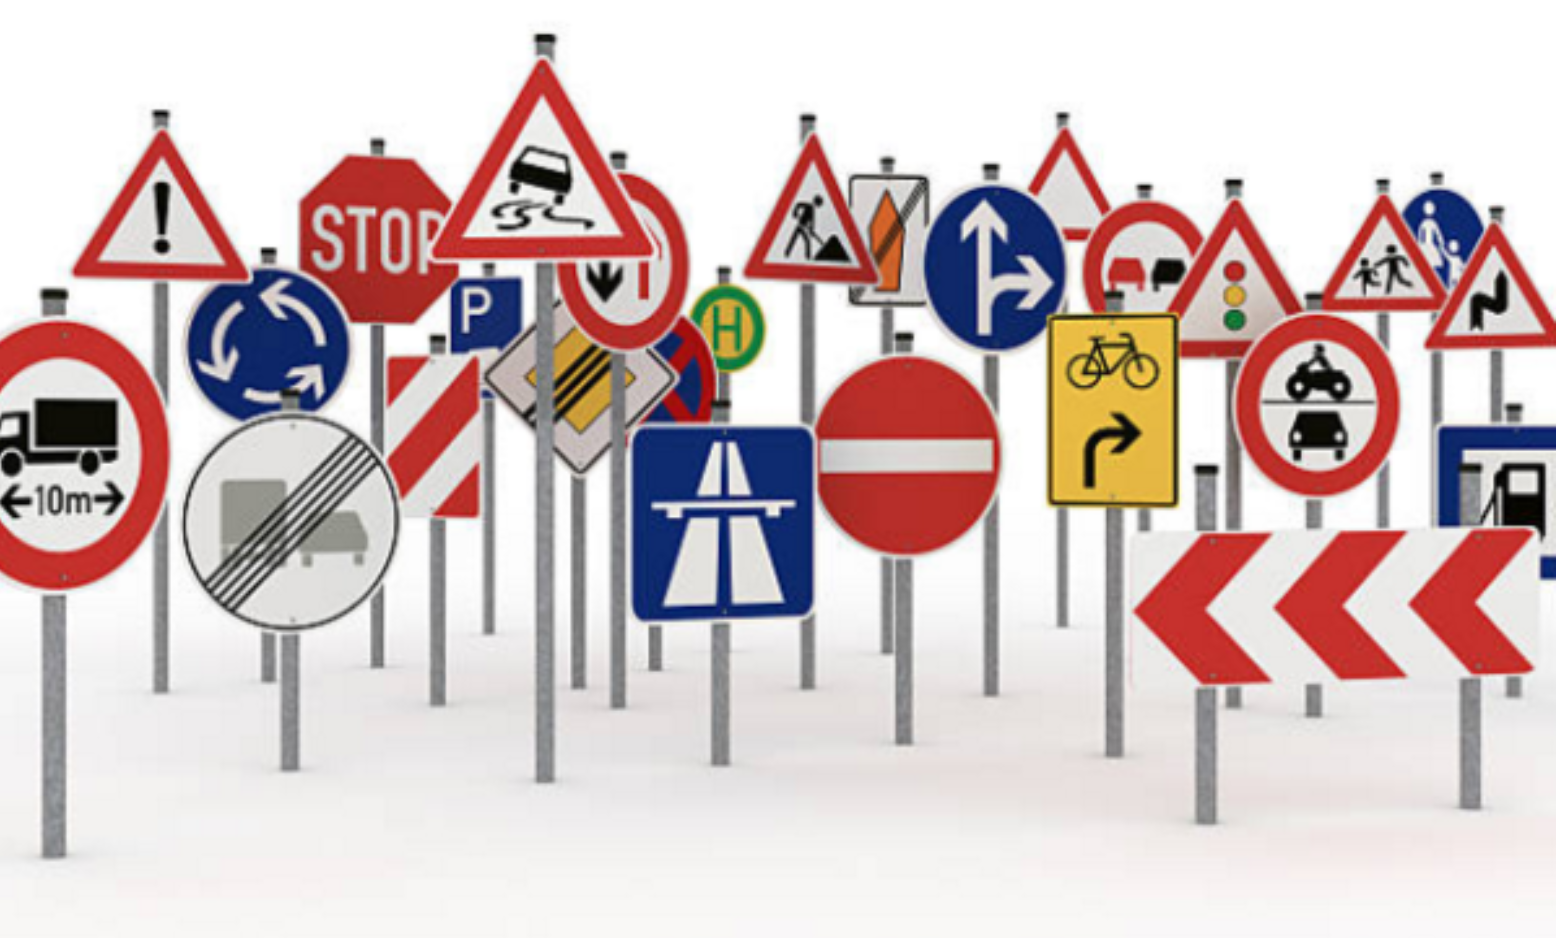 Ý nghĩa các loại biển báo giao thông đường bộ thông dụng nhất ...